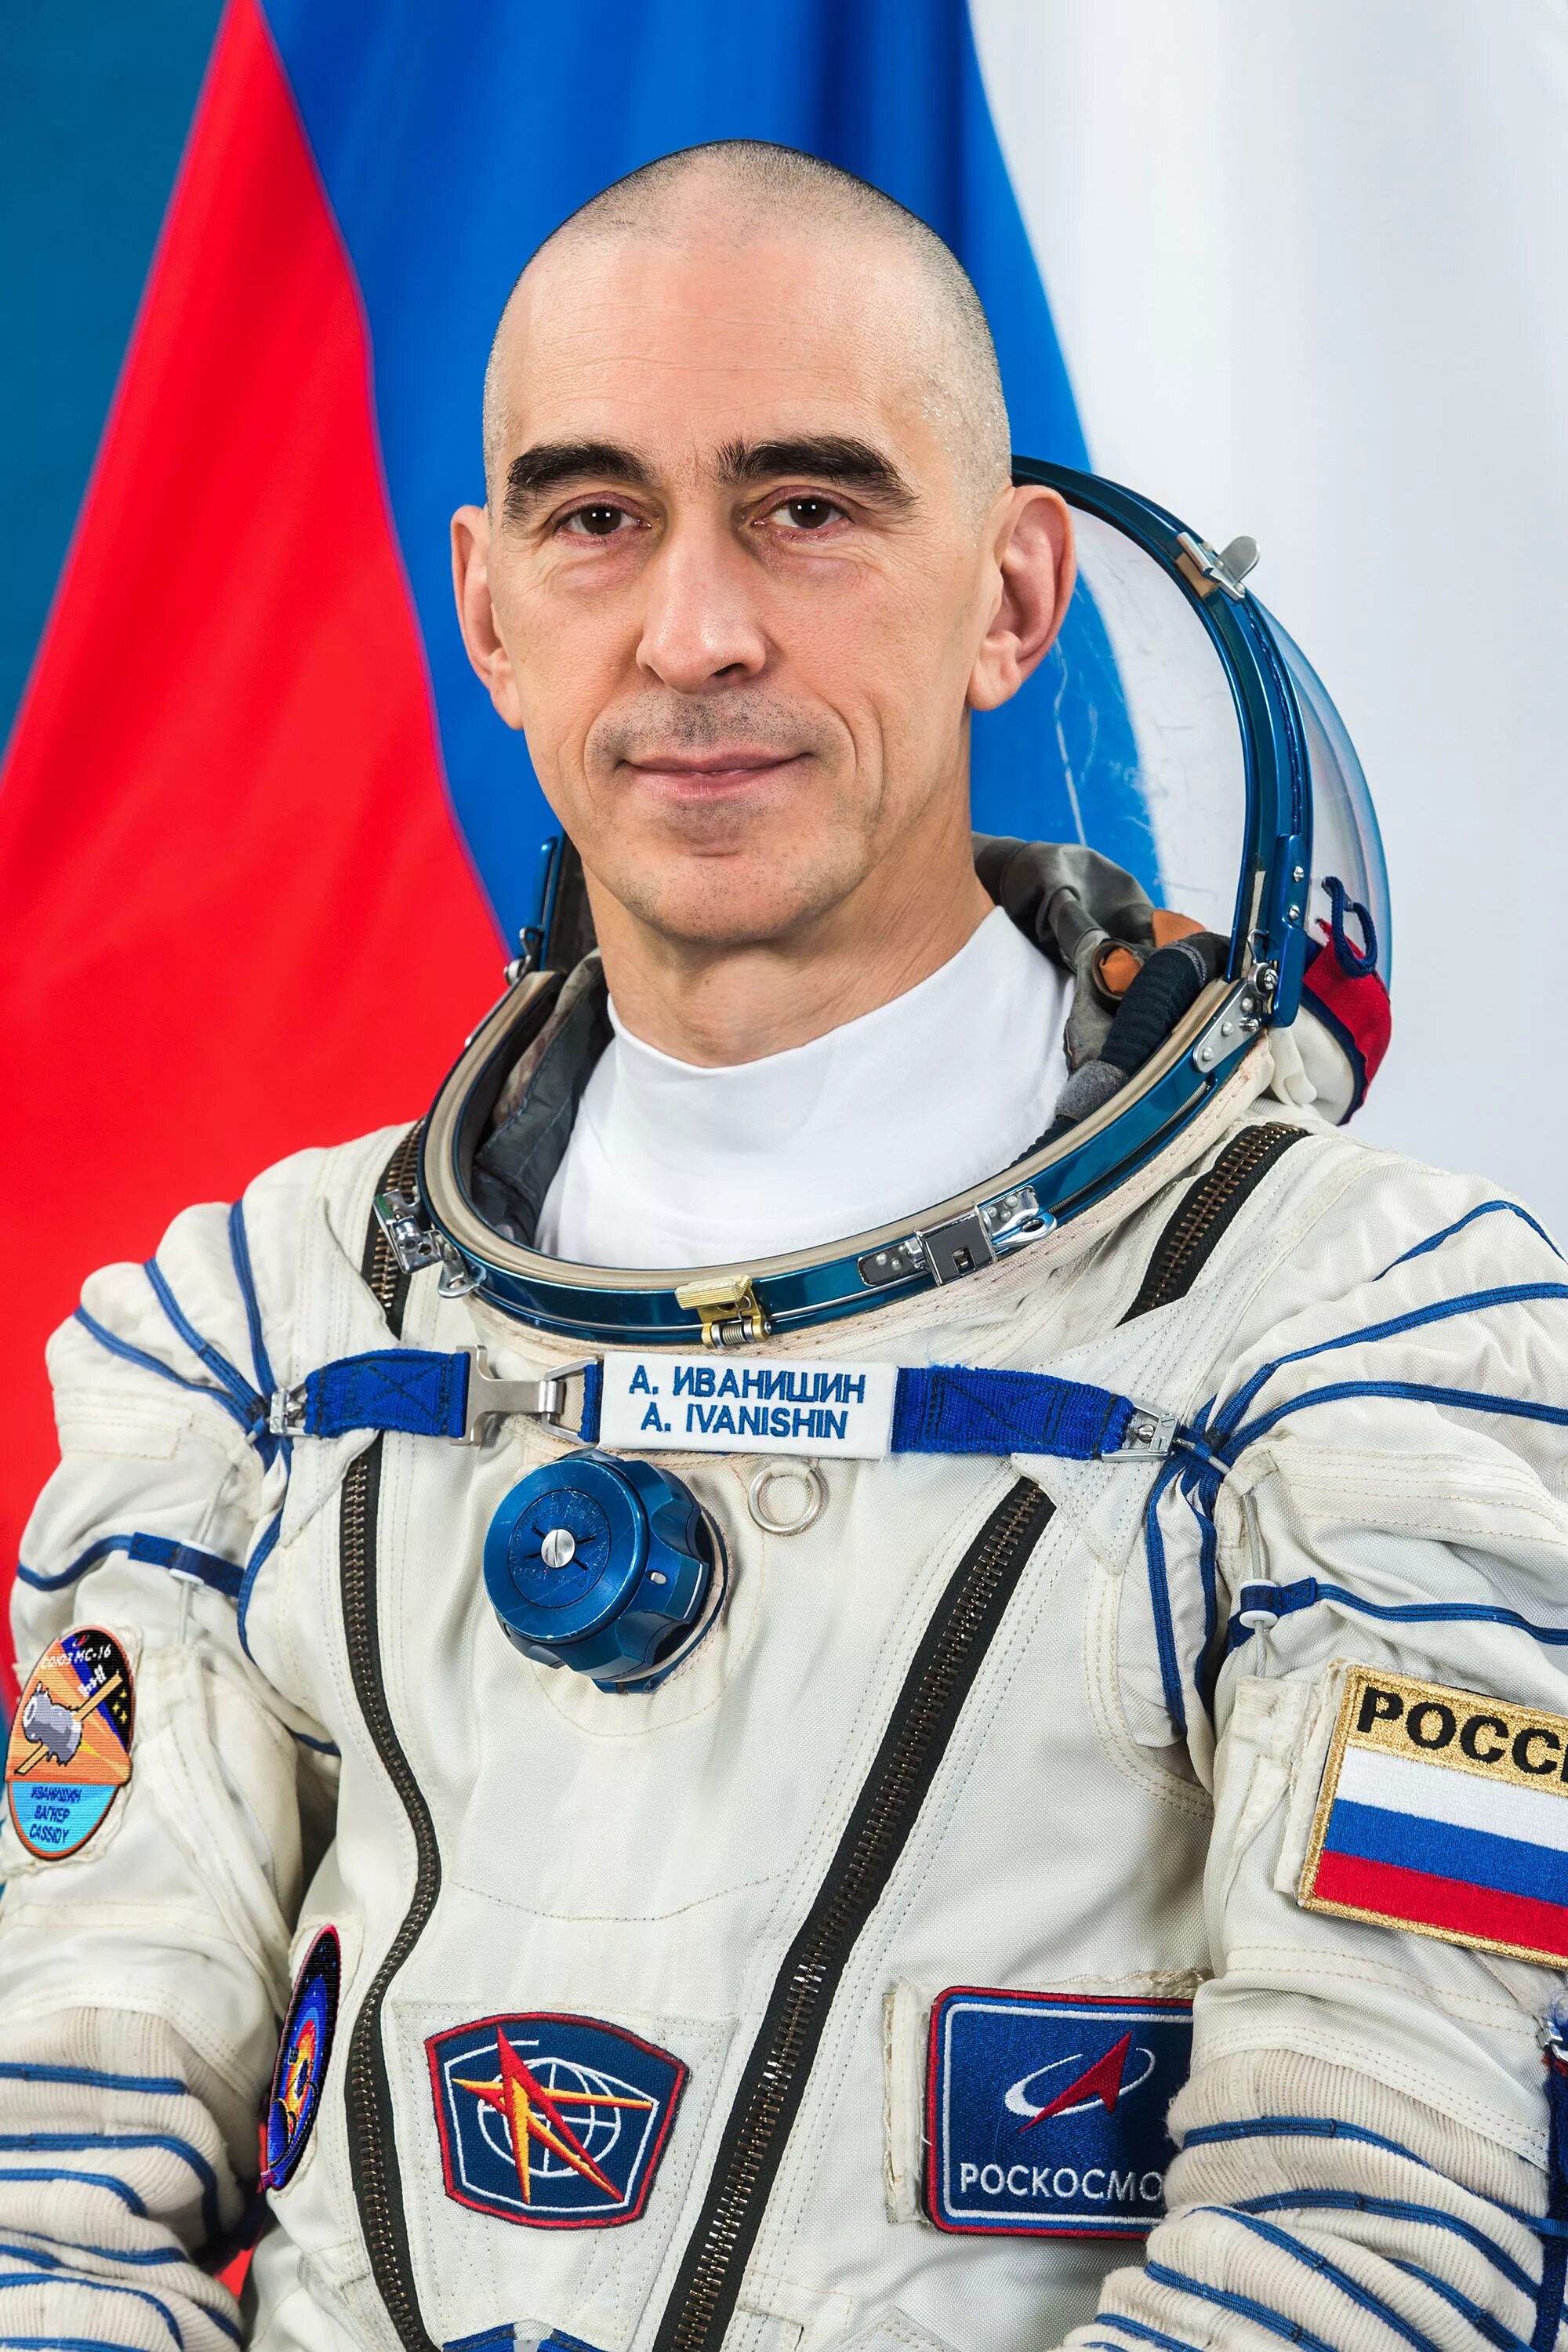 Великие космонавты россии